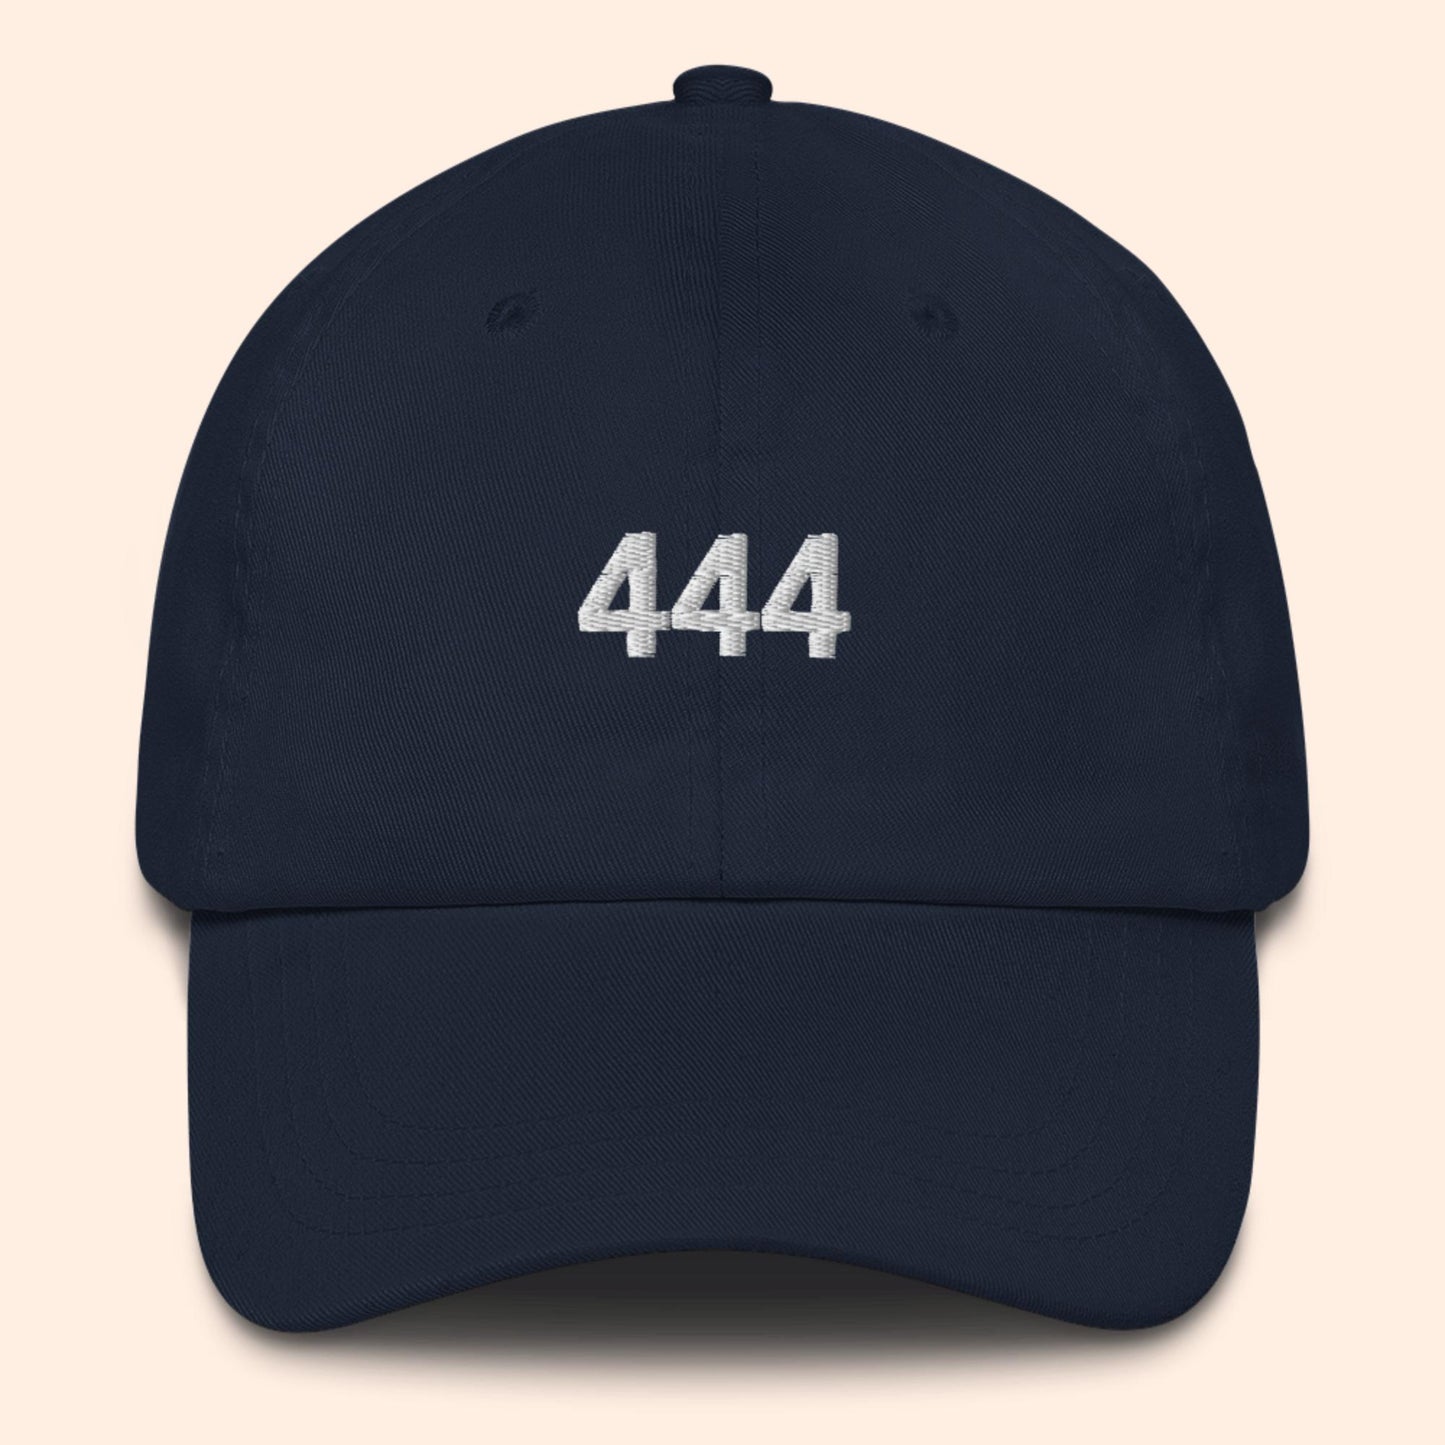 Sombrero con número de ángel 444